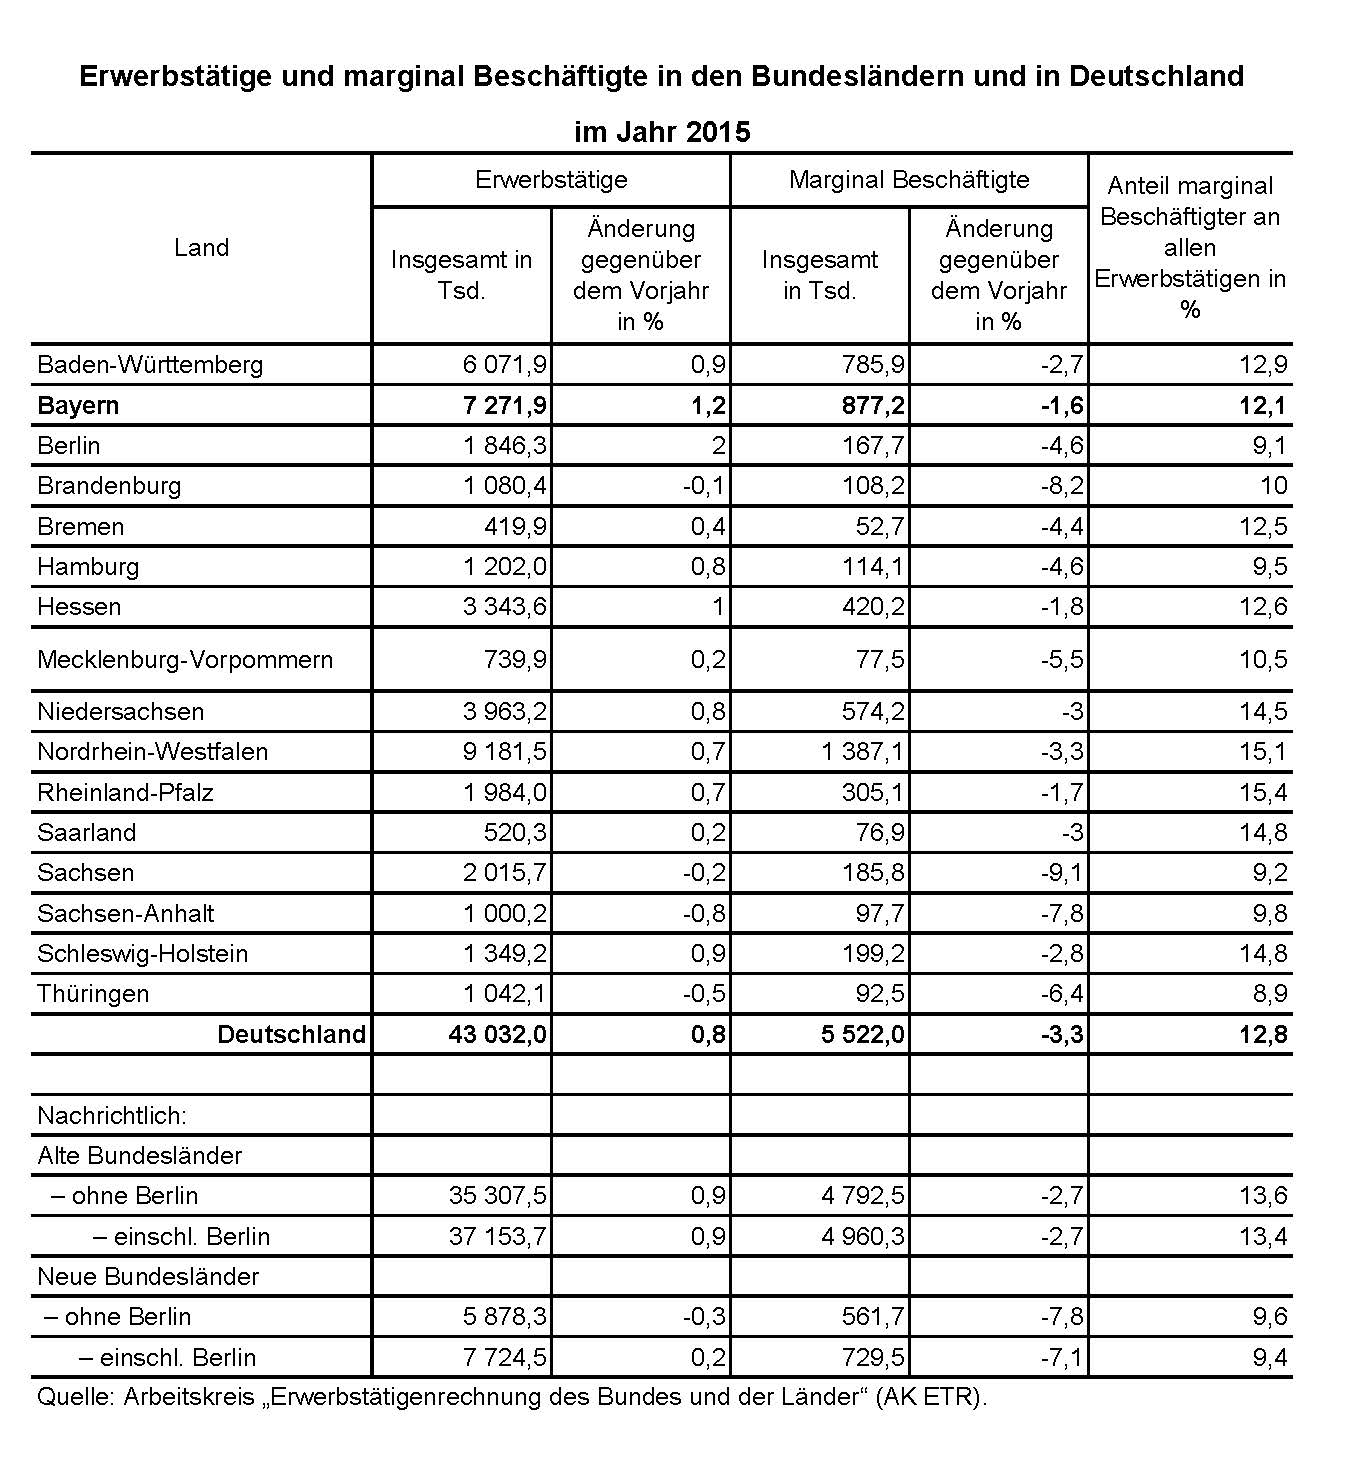 Erwerbstätige und marginal Beschäftigte in den Bundesländern und in Deutschland im Jahr 2015